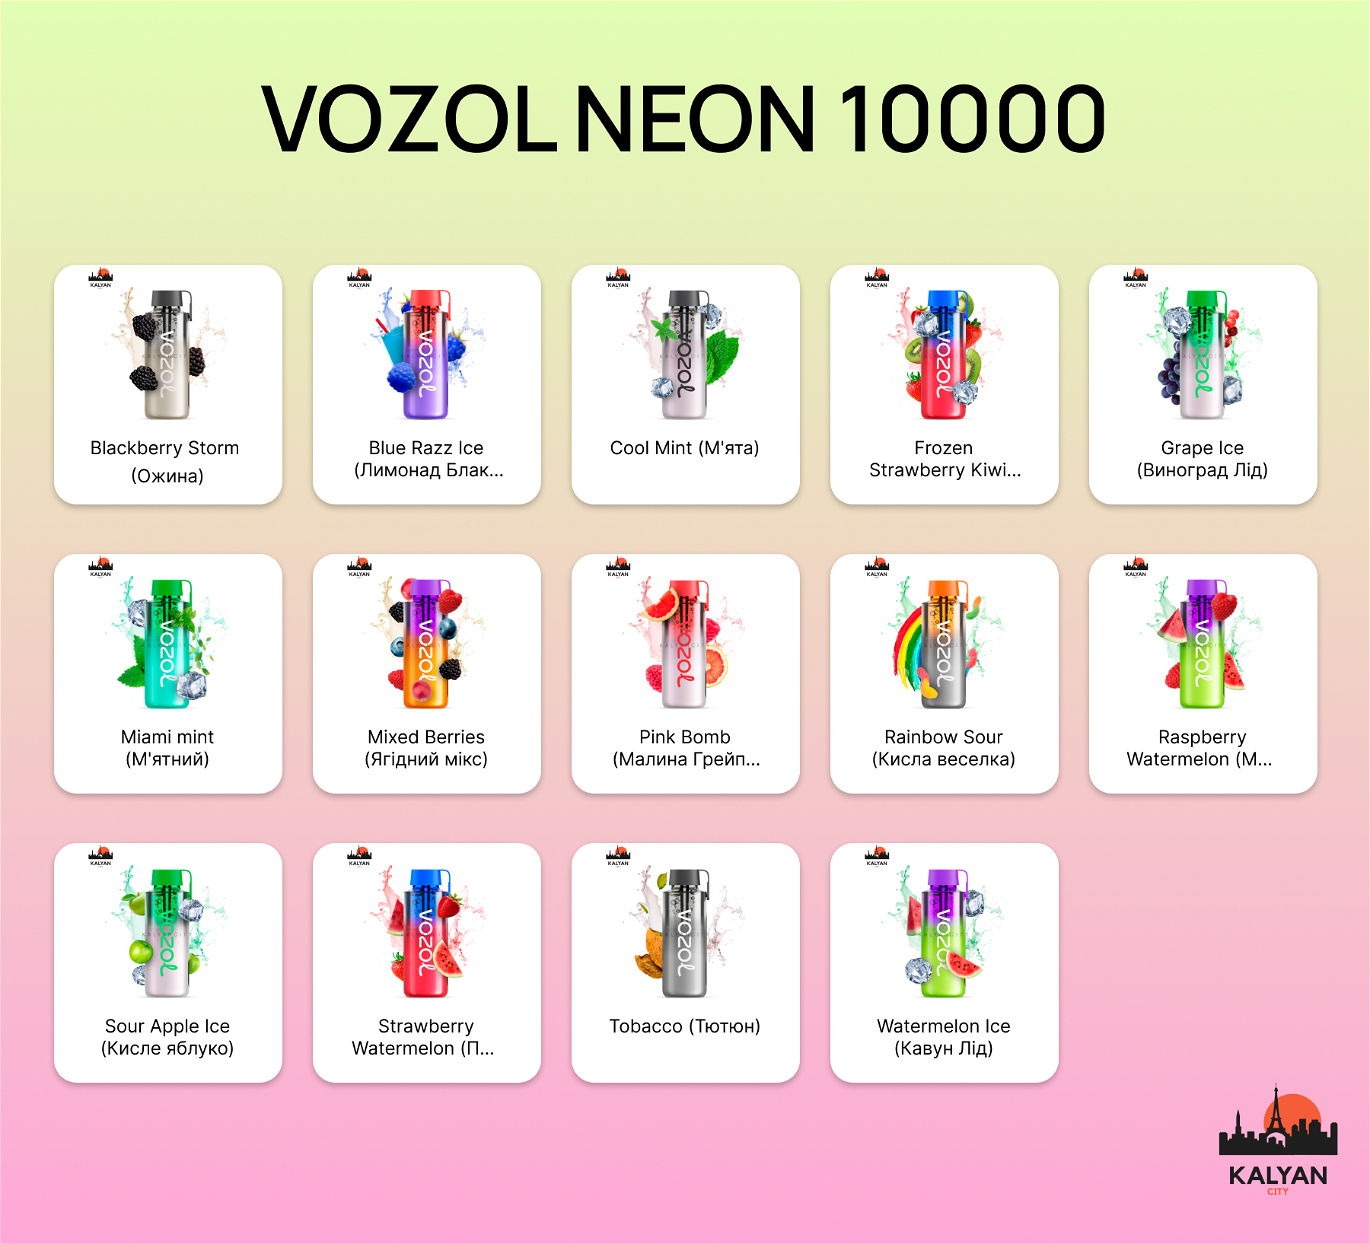 VOZOL NEON 10000 Вкусы